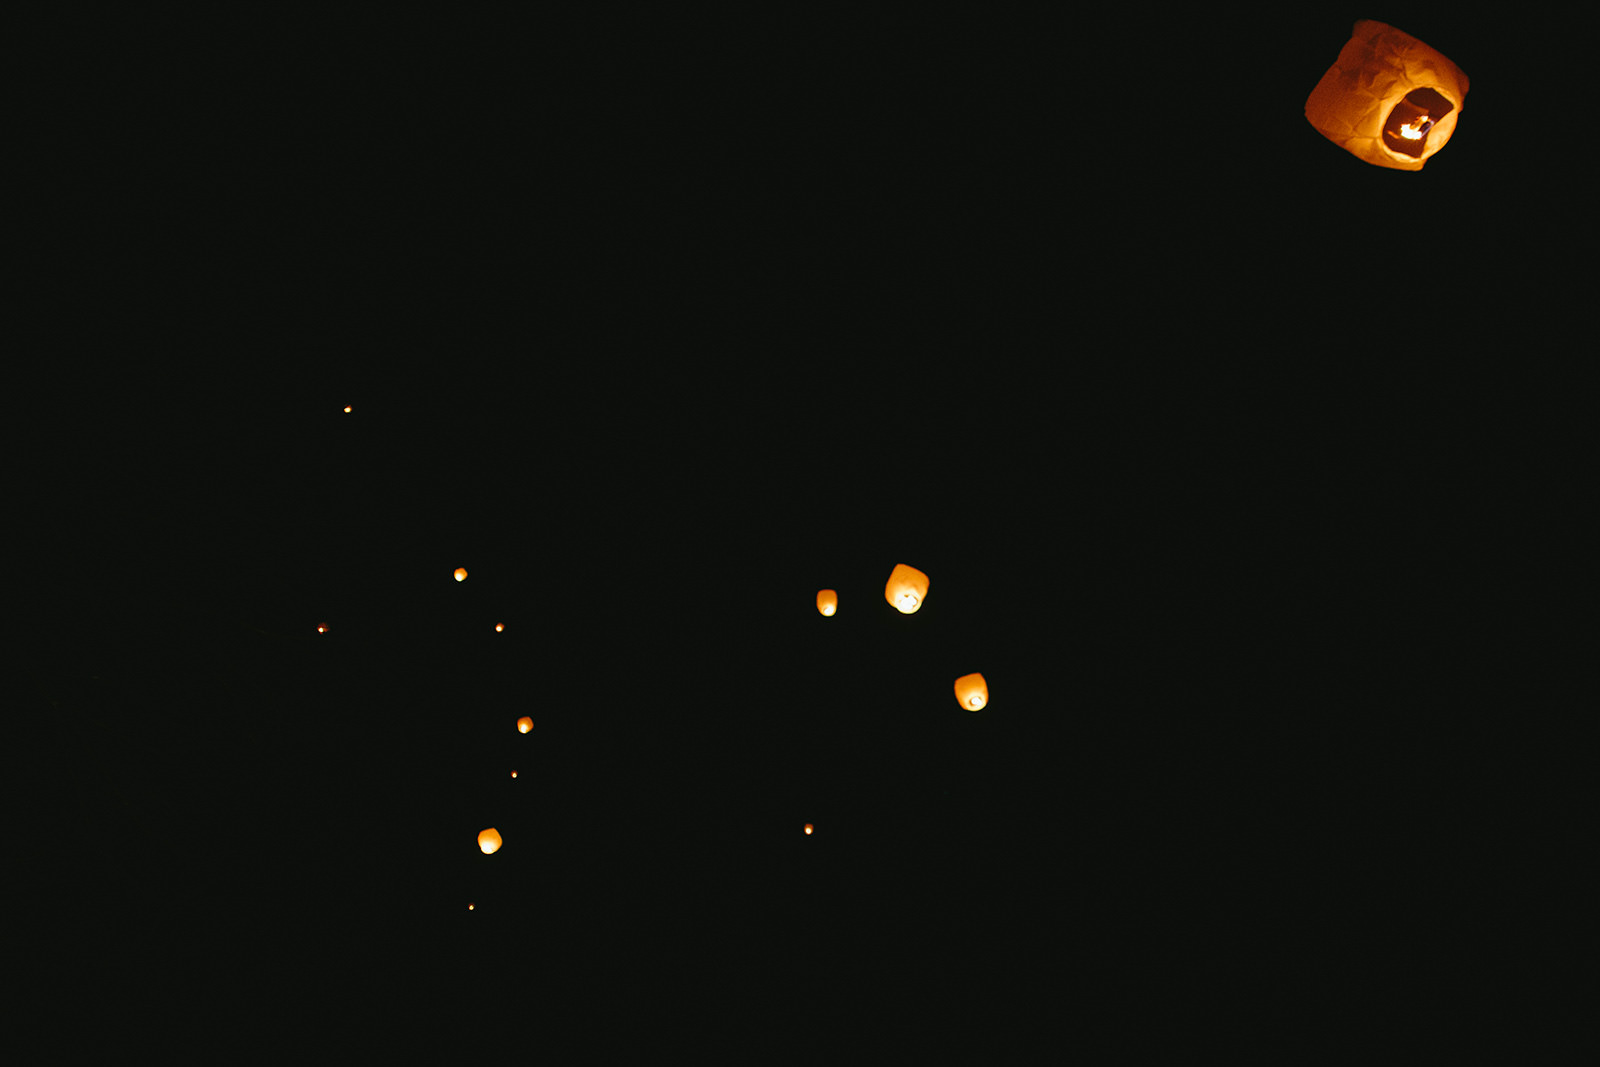 paper lanterns